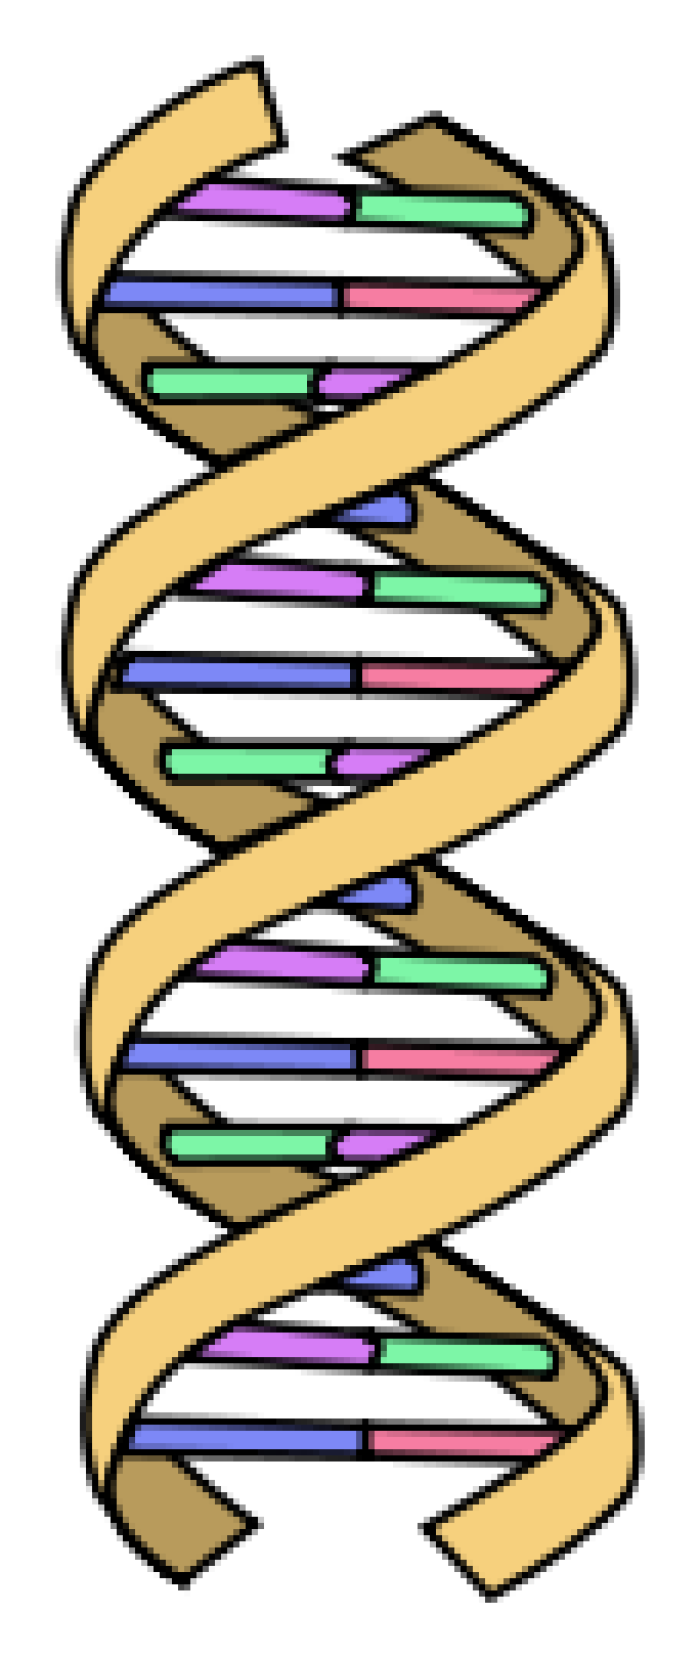 El ADN estructura helicoidal